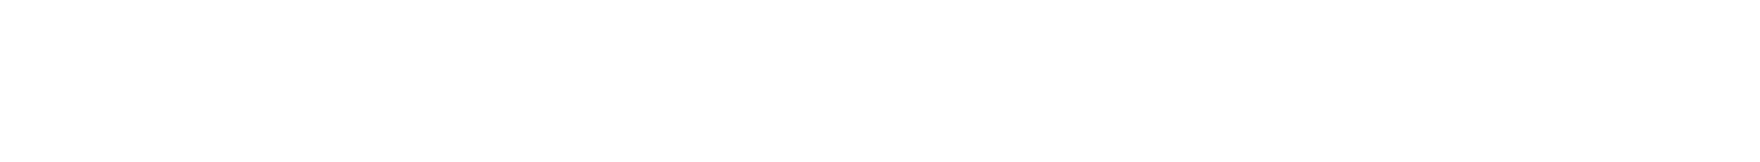 gymnastika čakovice logo gotjač